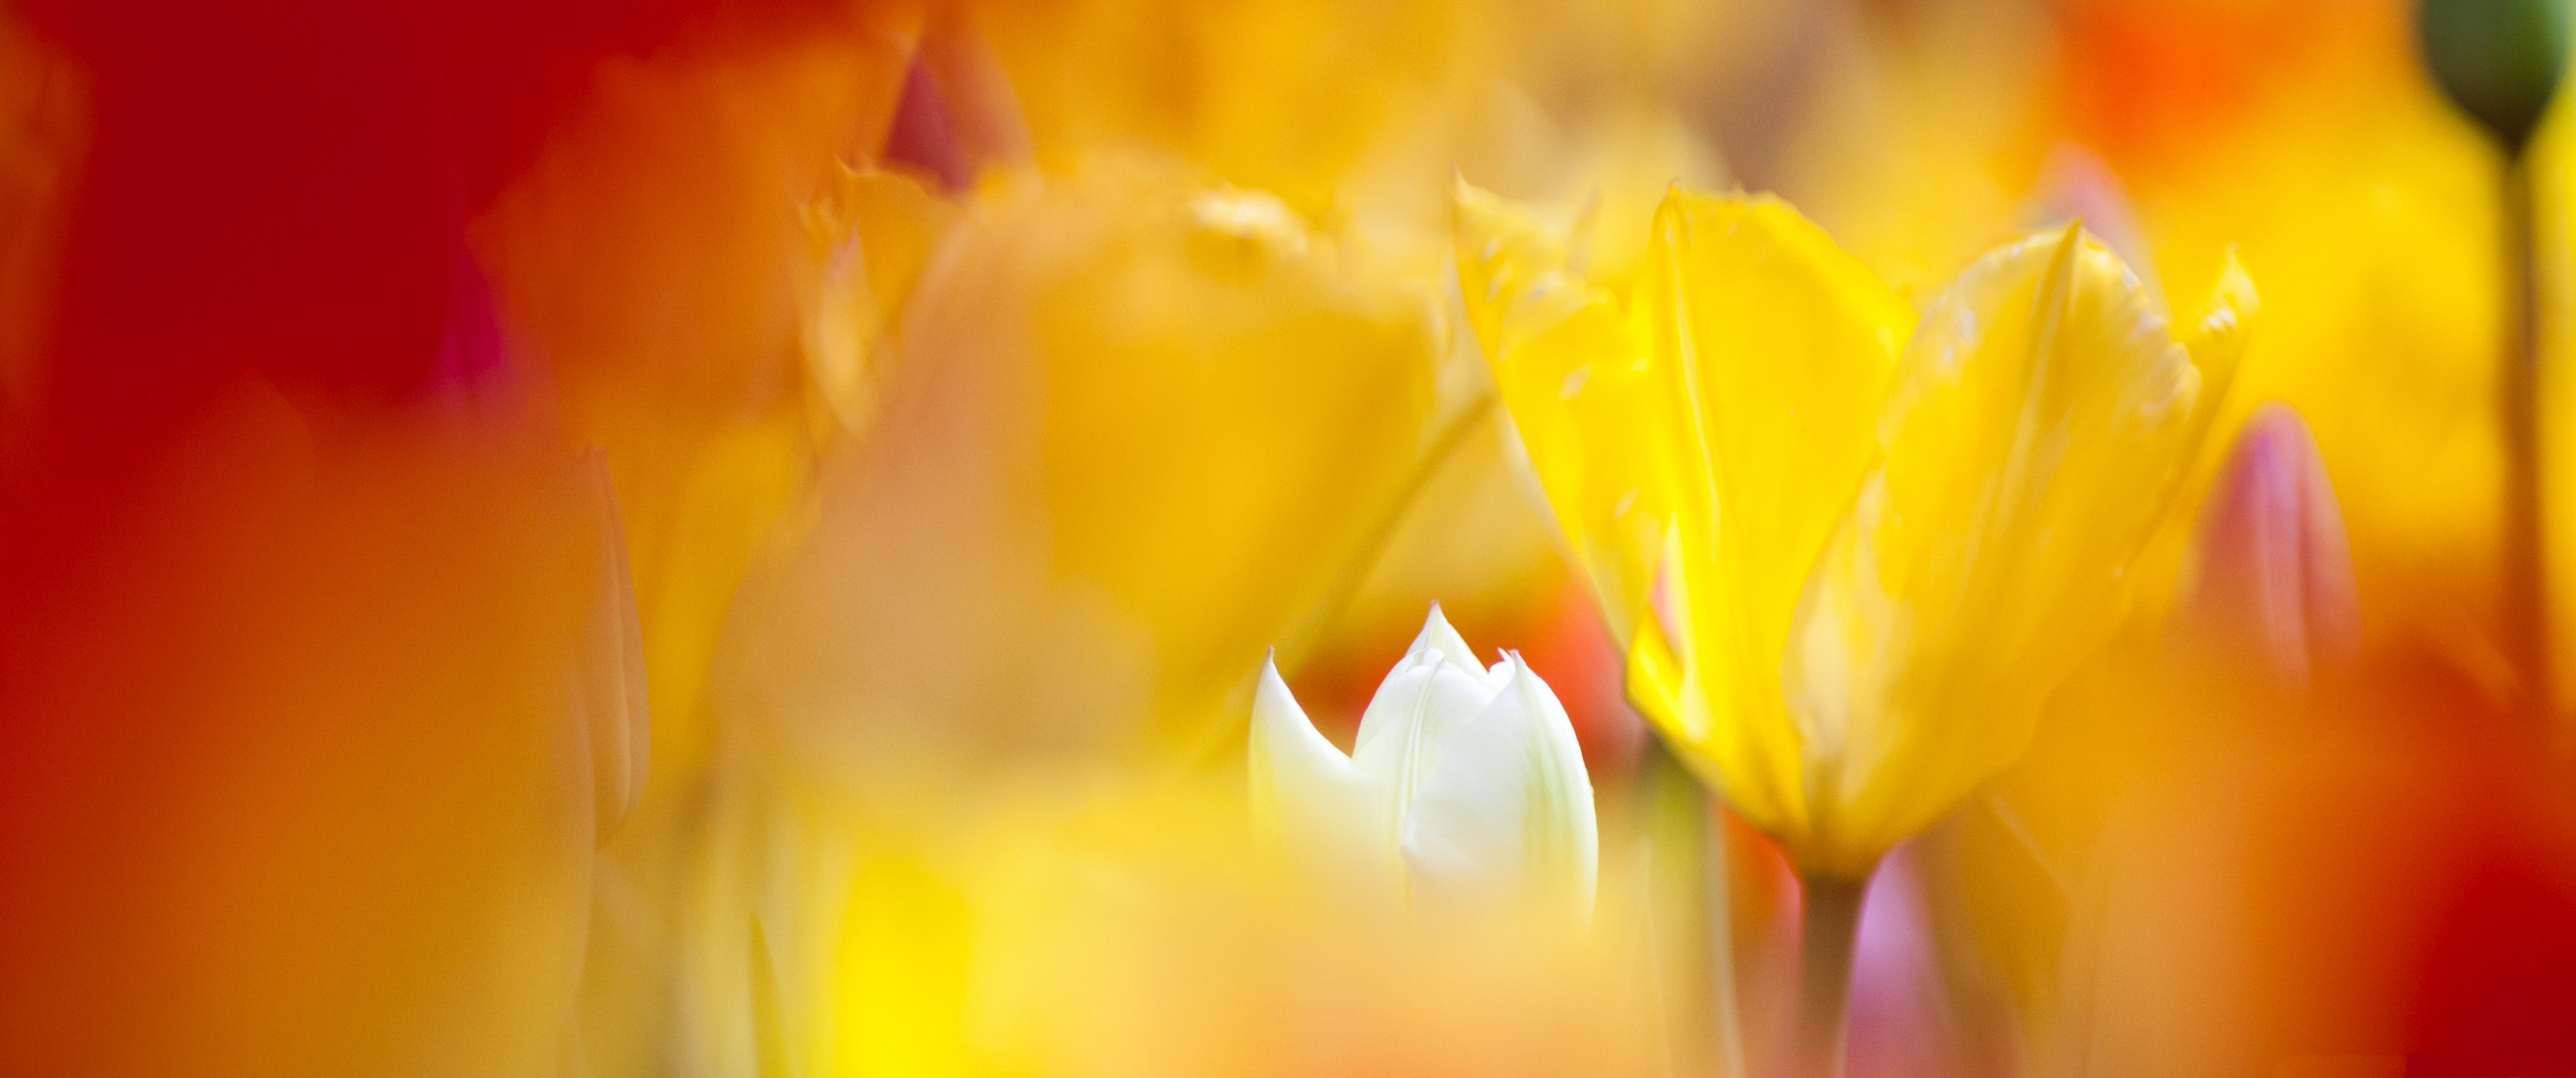 желтые тюльпаны, цветы, красивый фон, качественные обои